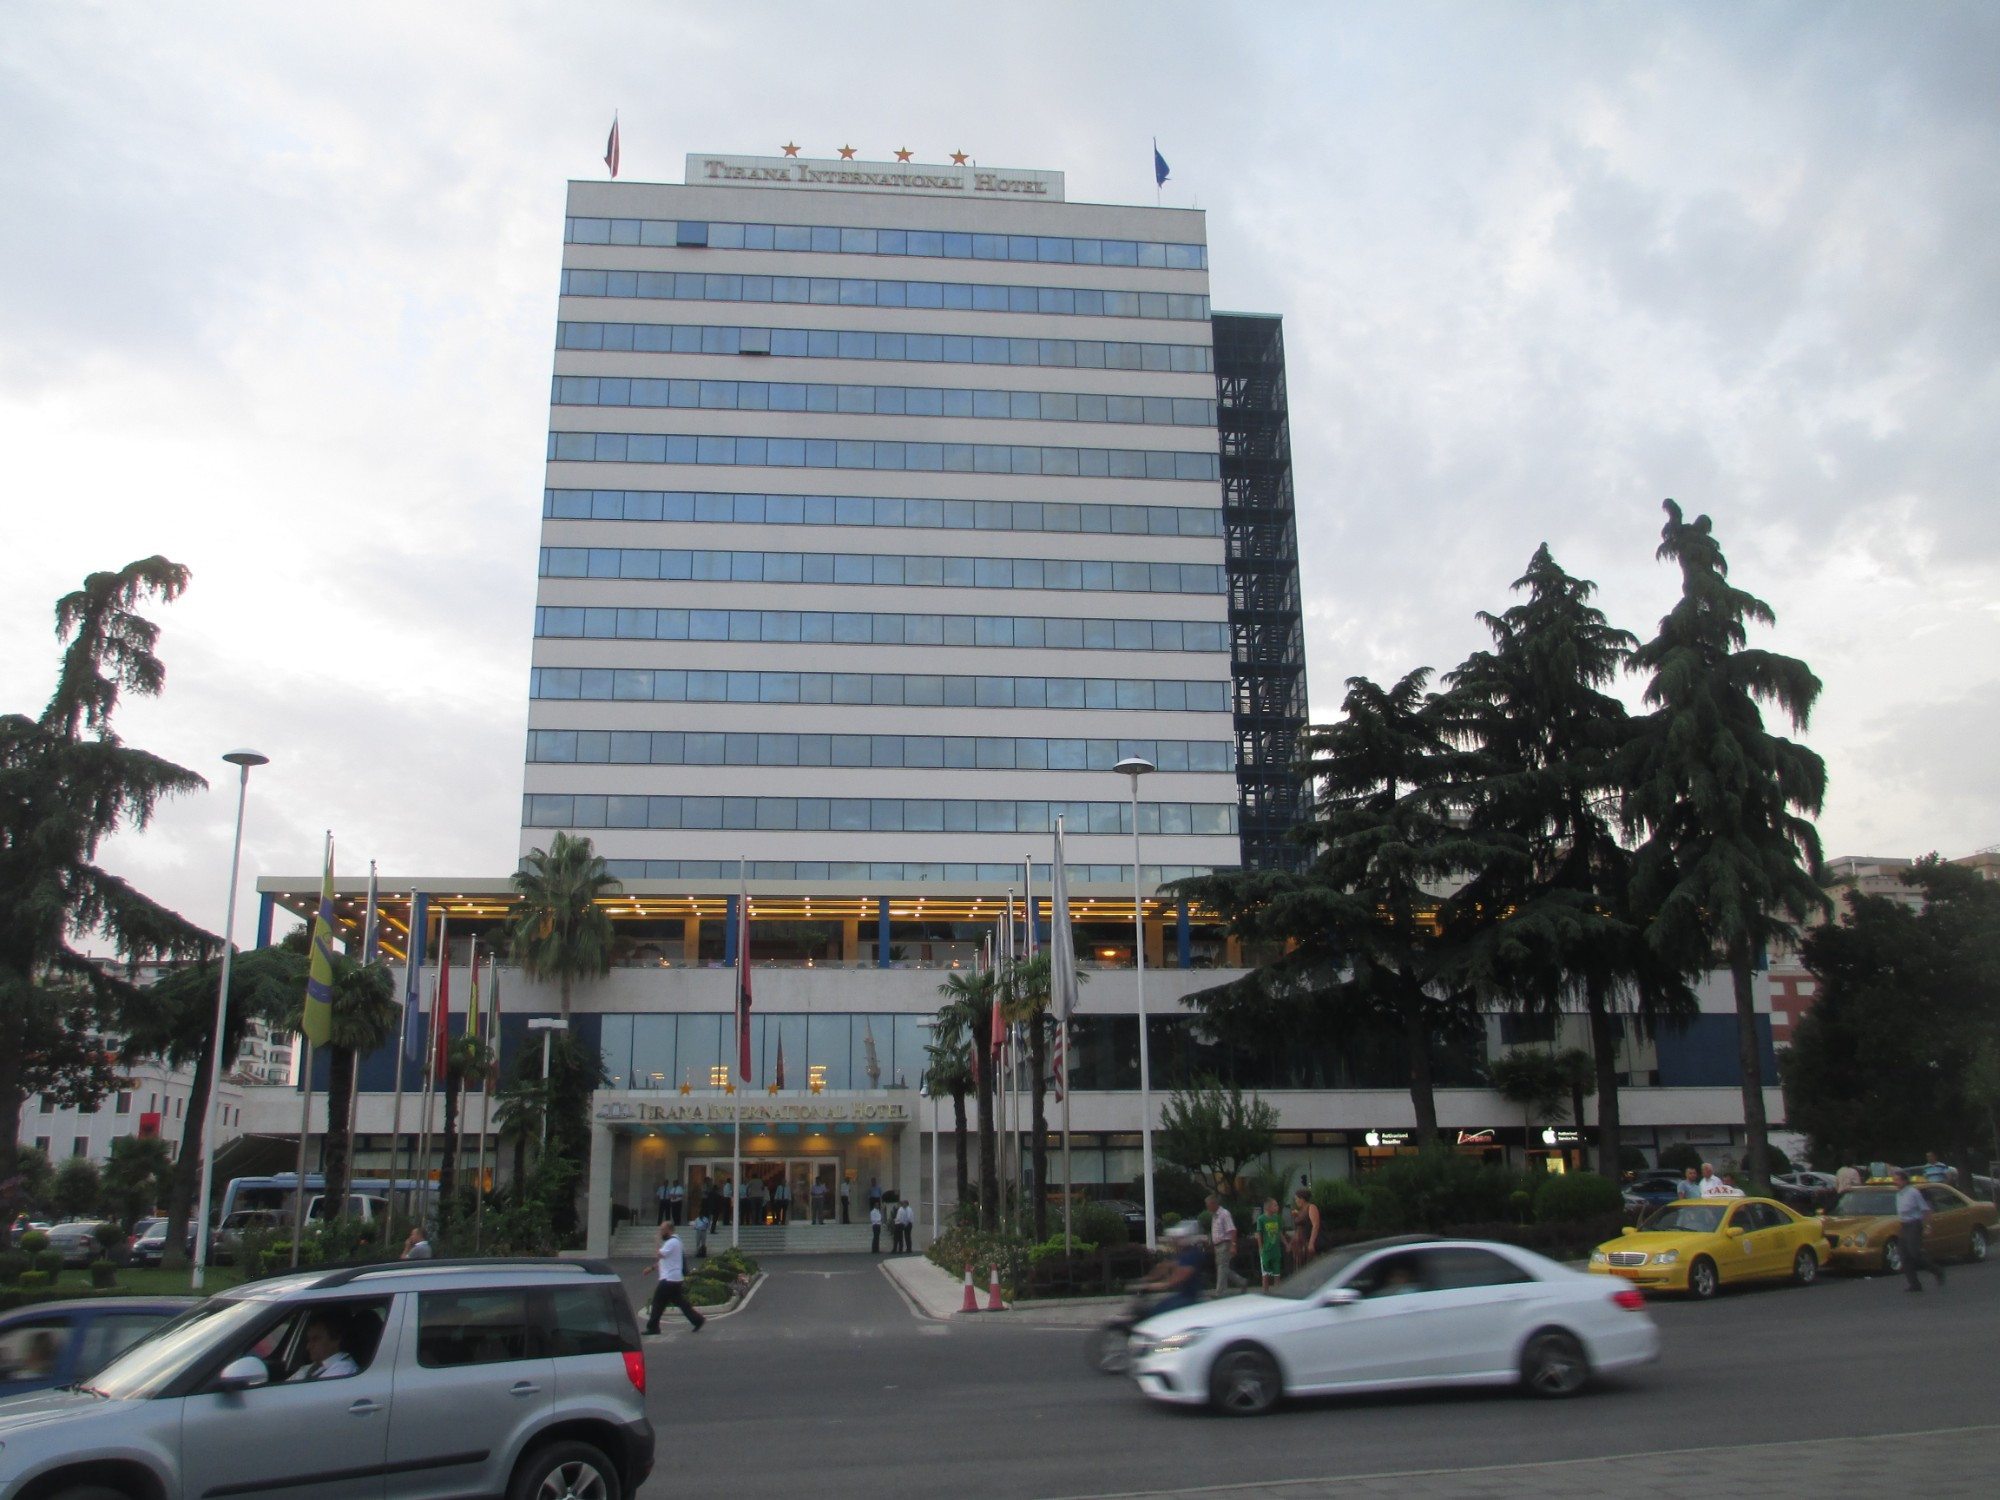 Тирана. Здание международной гостинницы. (05.09.2015)